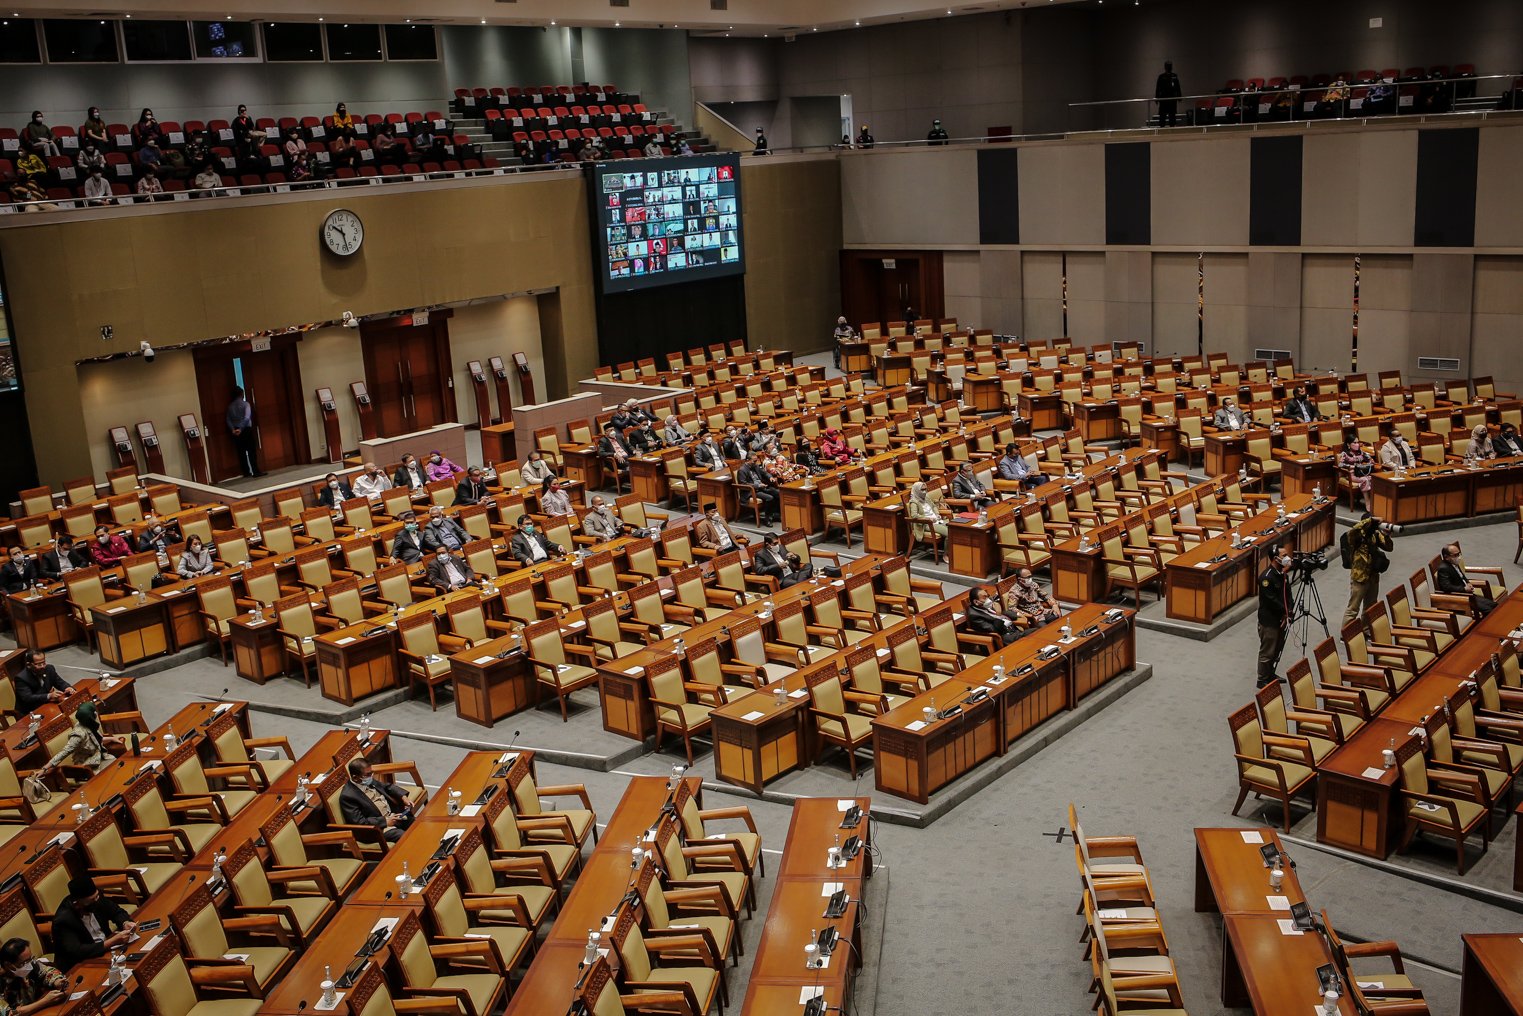 Suasana Rapat Paripurna ke-13 DPR RI Masa Persidangan III Tahun Sidang 2021-2022 di Kompleks Parlemen, Jakarta, Selasa (11/1/2022).Dewan Perwakilan Rakyat (DPR) dan pemerintah sepakat mengesahkan Undang-Undang Ibu Kota Negara dalam Rapat Paripurna pada Selasa (18/1).